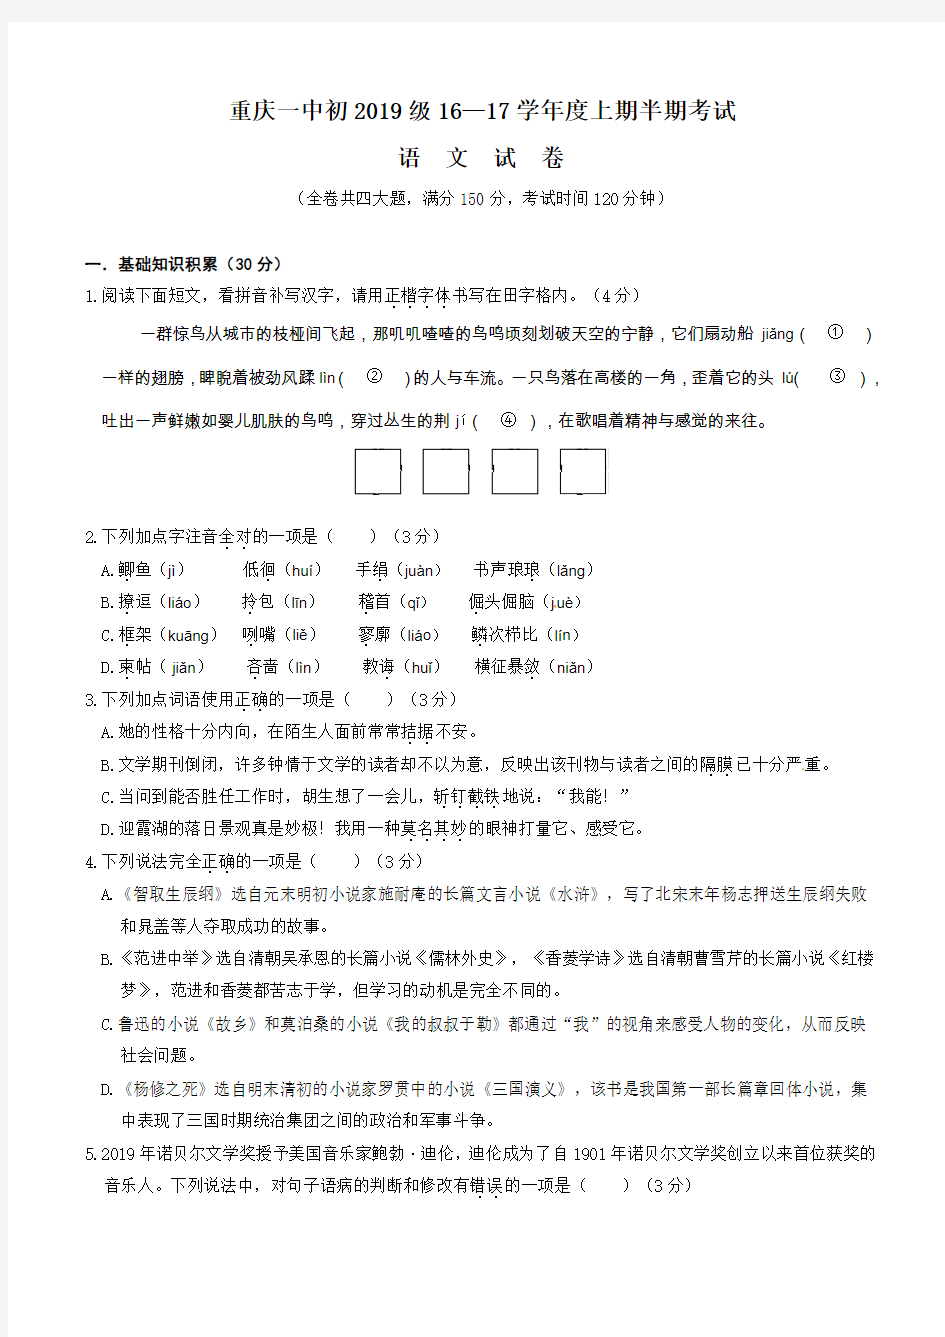 重庆一中初2017级九年级上期中考试语文试题(Word,含答案)资料-共10页